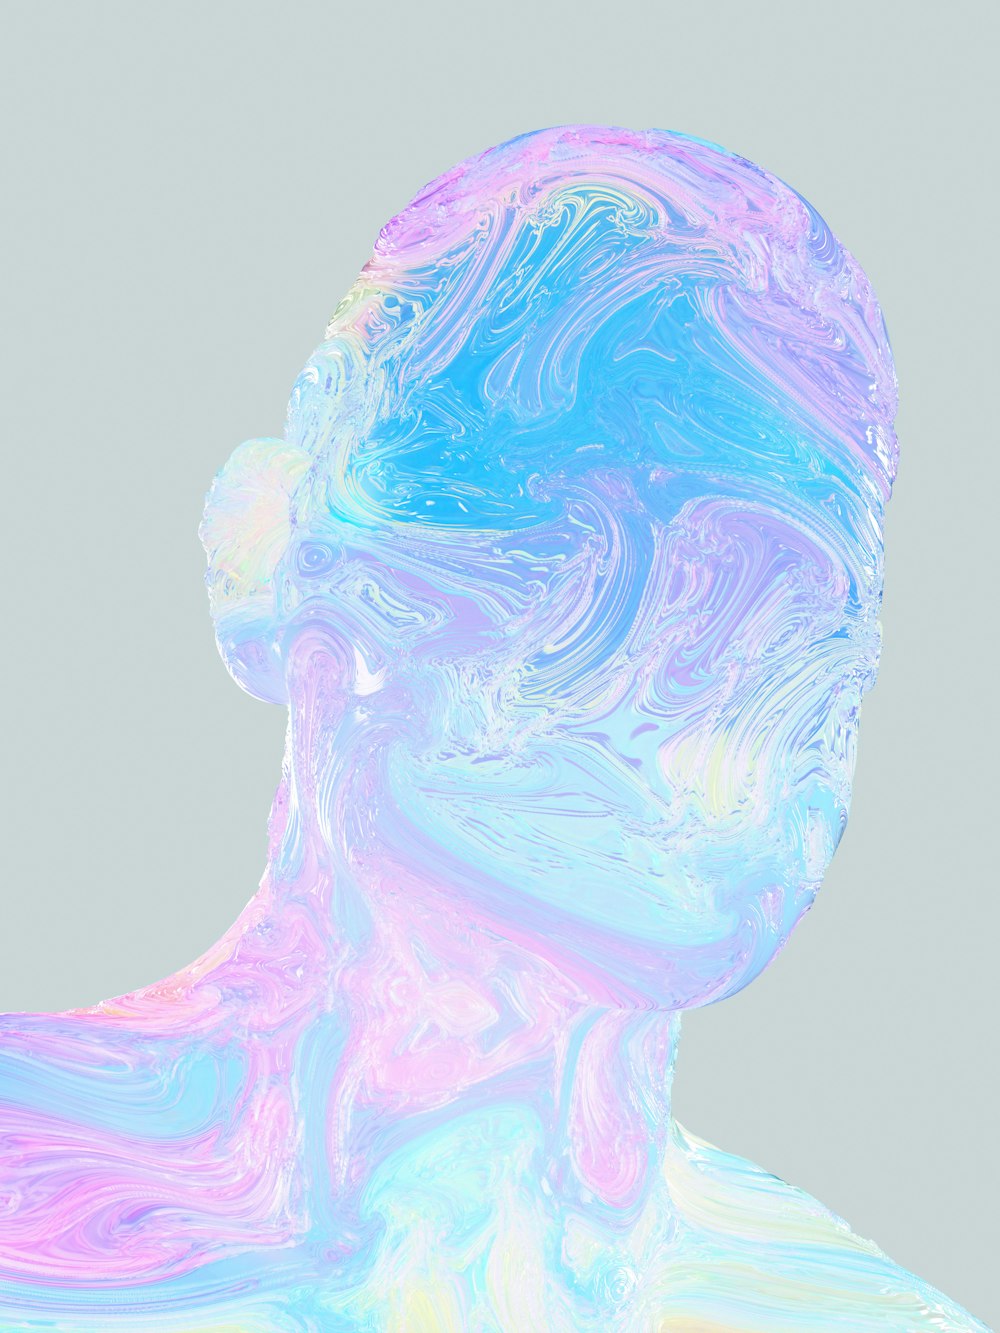 Le visage d’une femme est peint dans des couleurs pastel